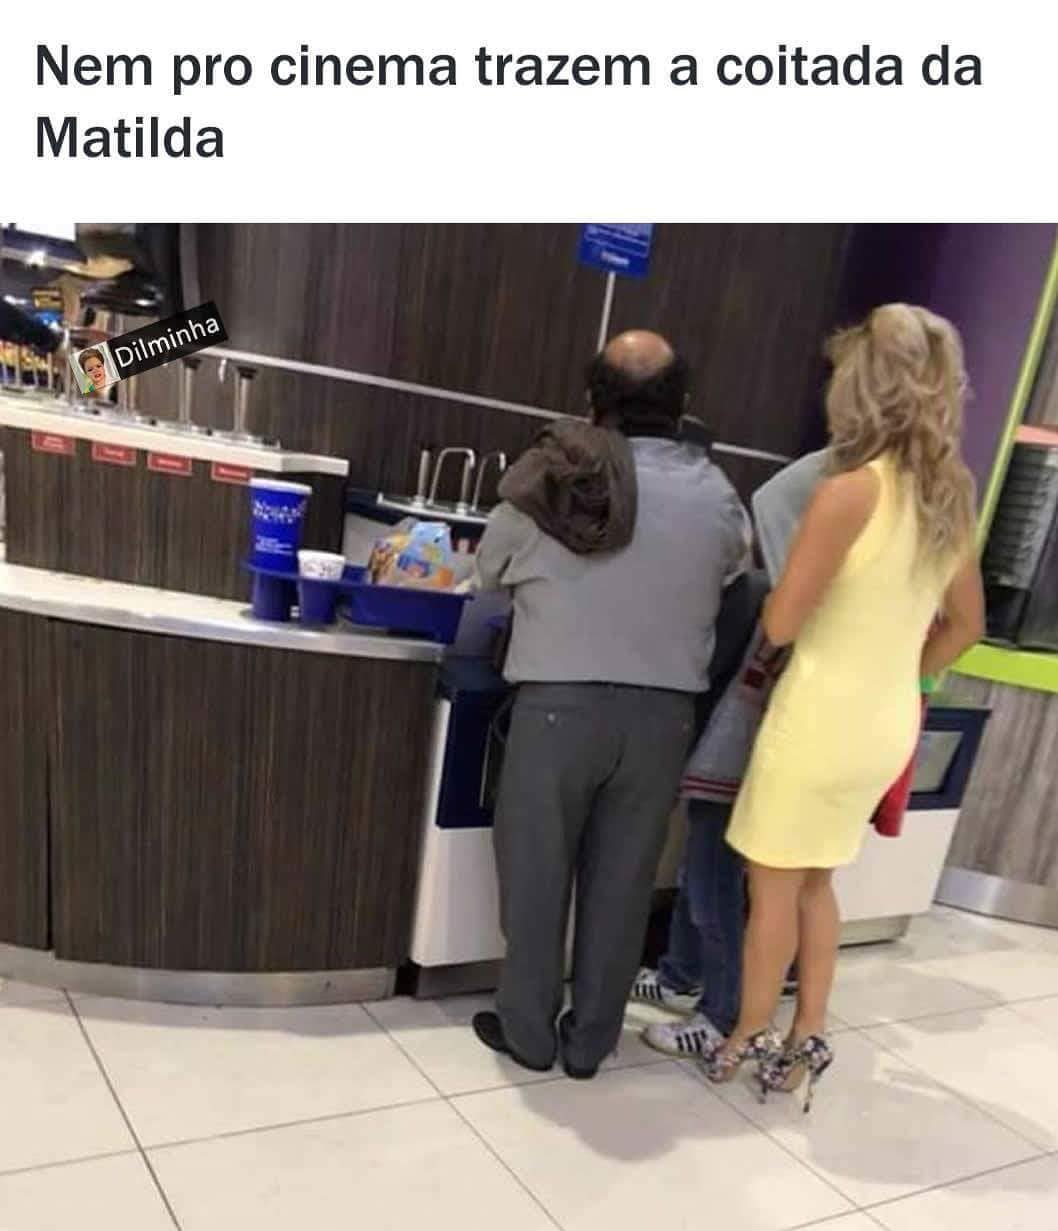 Nem pro cinema trazem a coitada da Matilda.